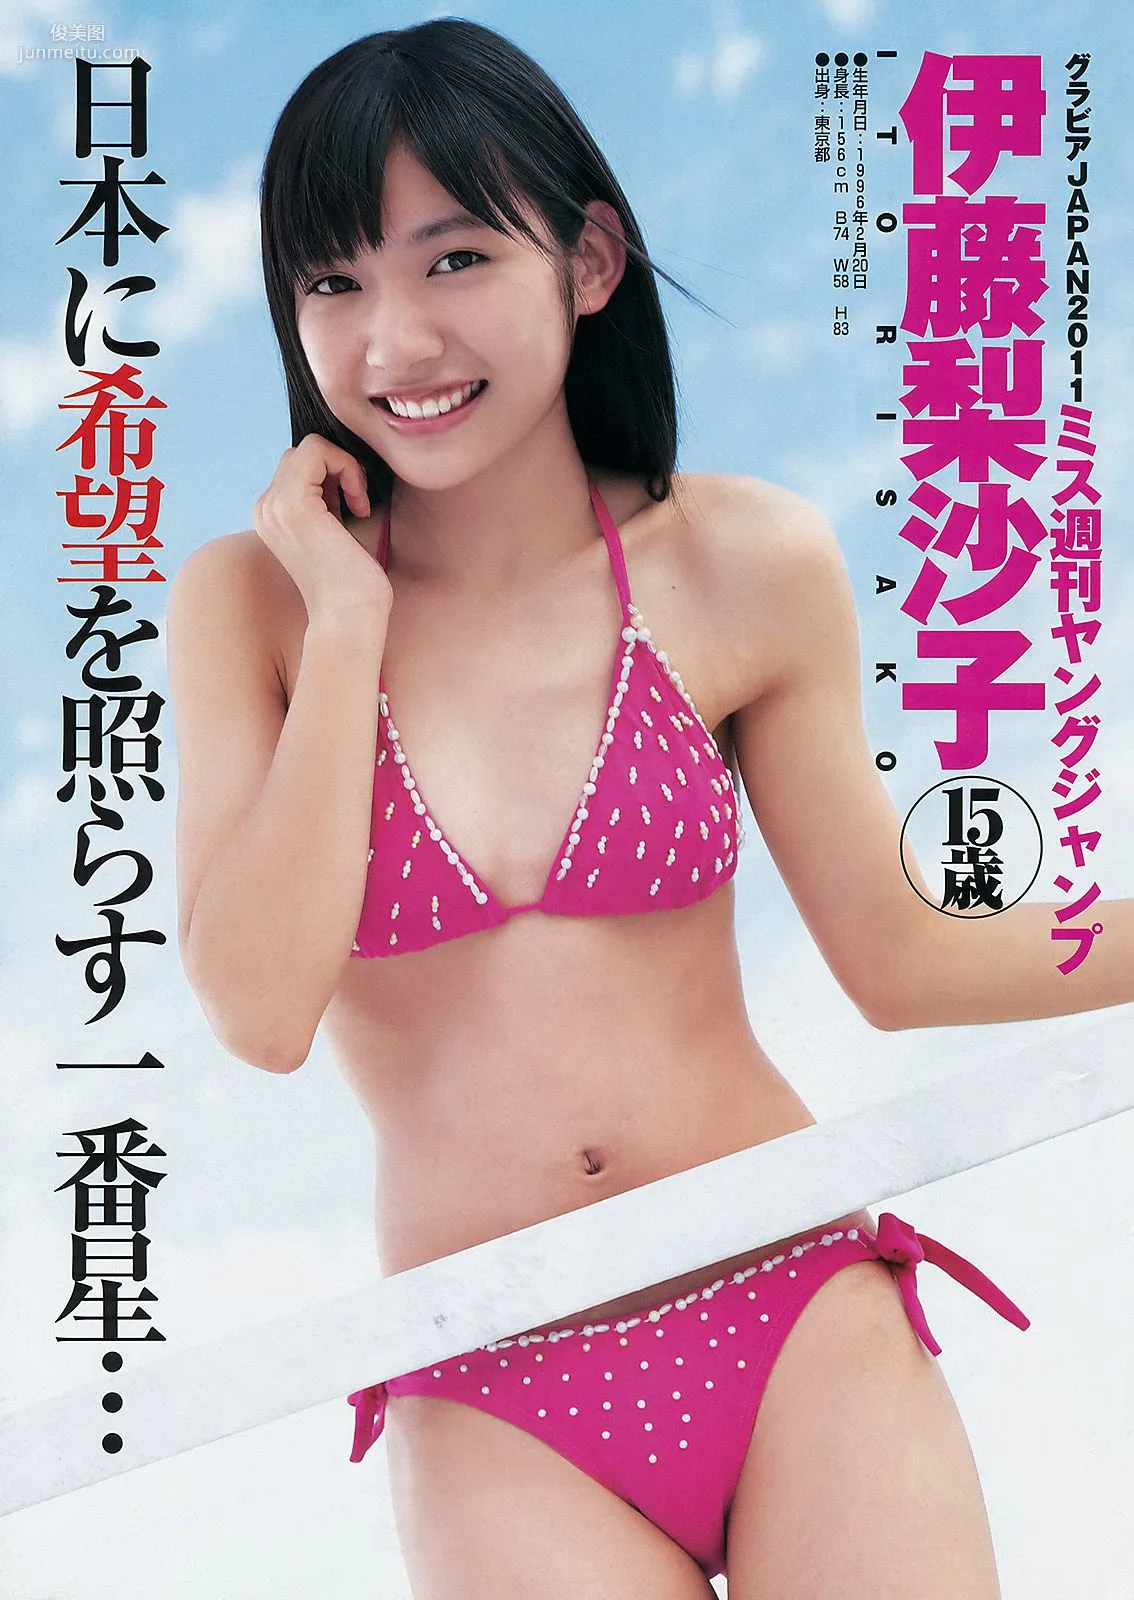 伊藤梨沙子 仲村みう [Weekly Young Jump] 2011年No.50 写真杂志2